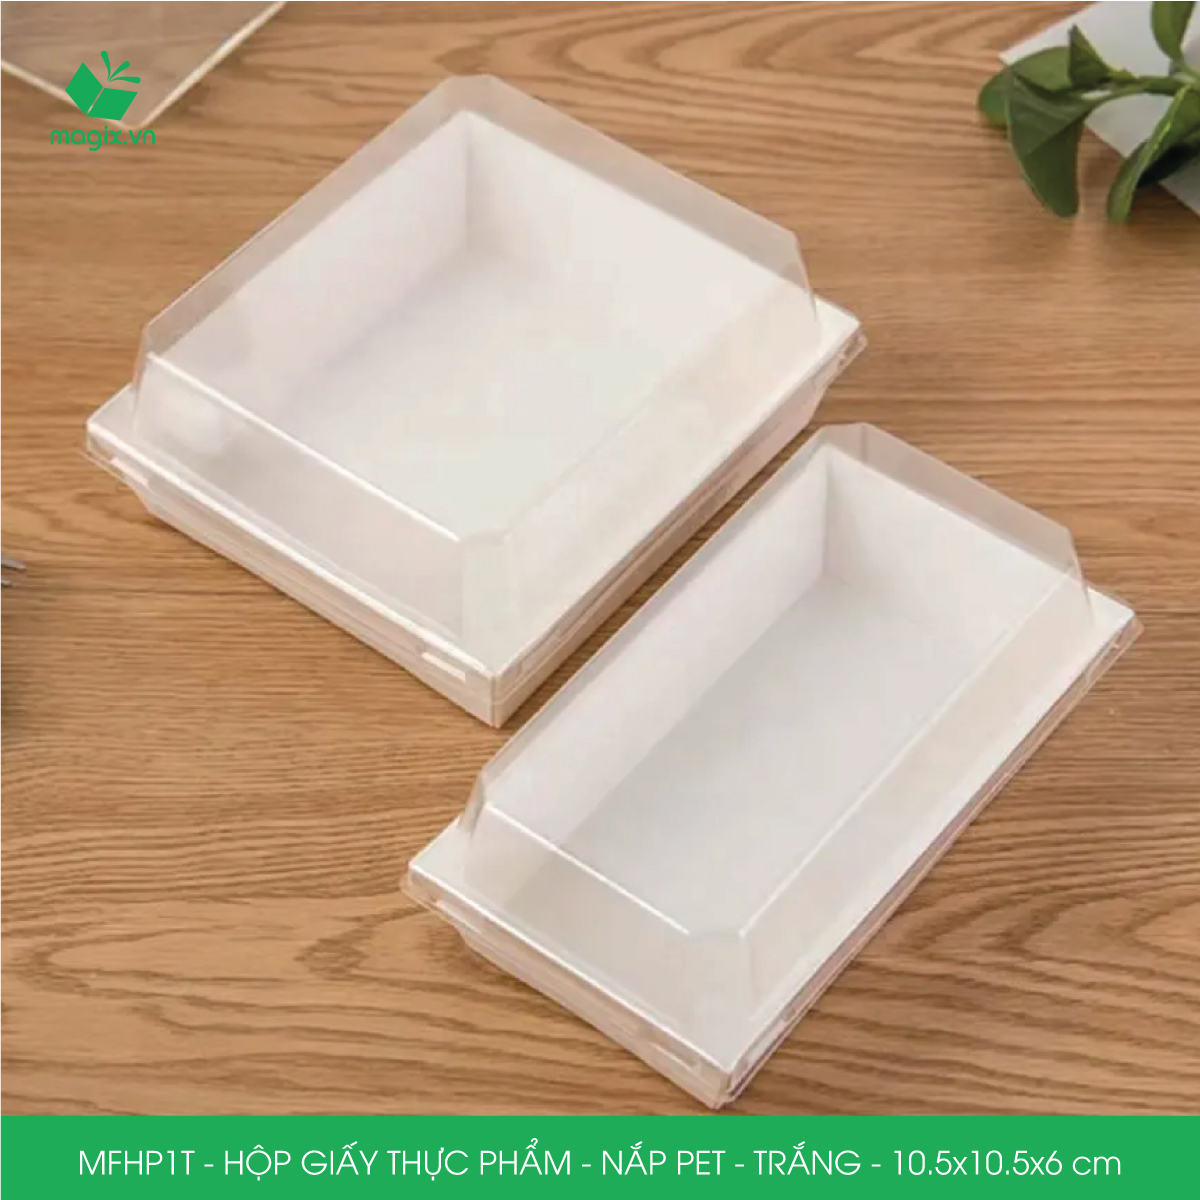 MFHP1T - 10.5x10.5x6 cm - 25 hộp giấy thực phẩm màu trắng nắp Pet, hộp giấy vuông đựng thức ăn, hộp bánh nắp trong